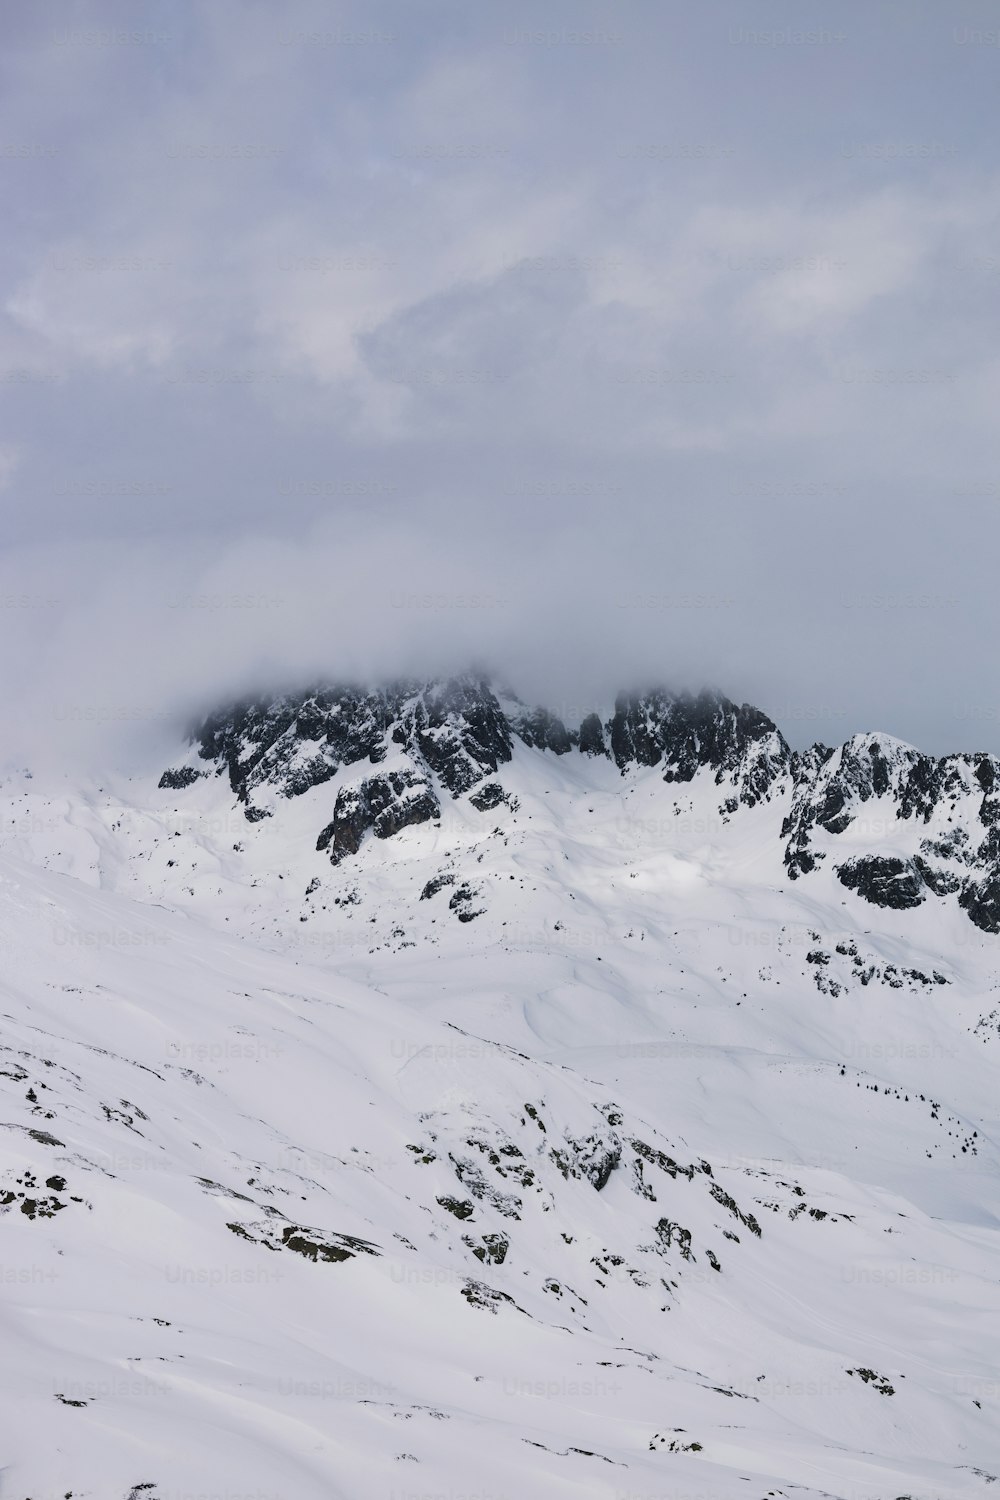 Ein Berg mit Schnee und Wolken unter einem bewölkten Himmel